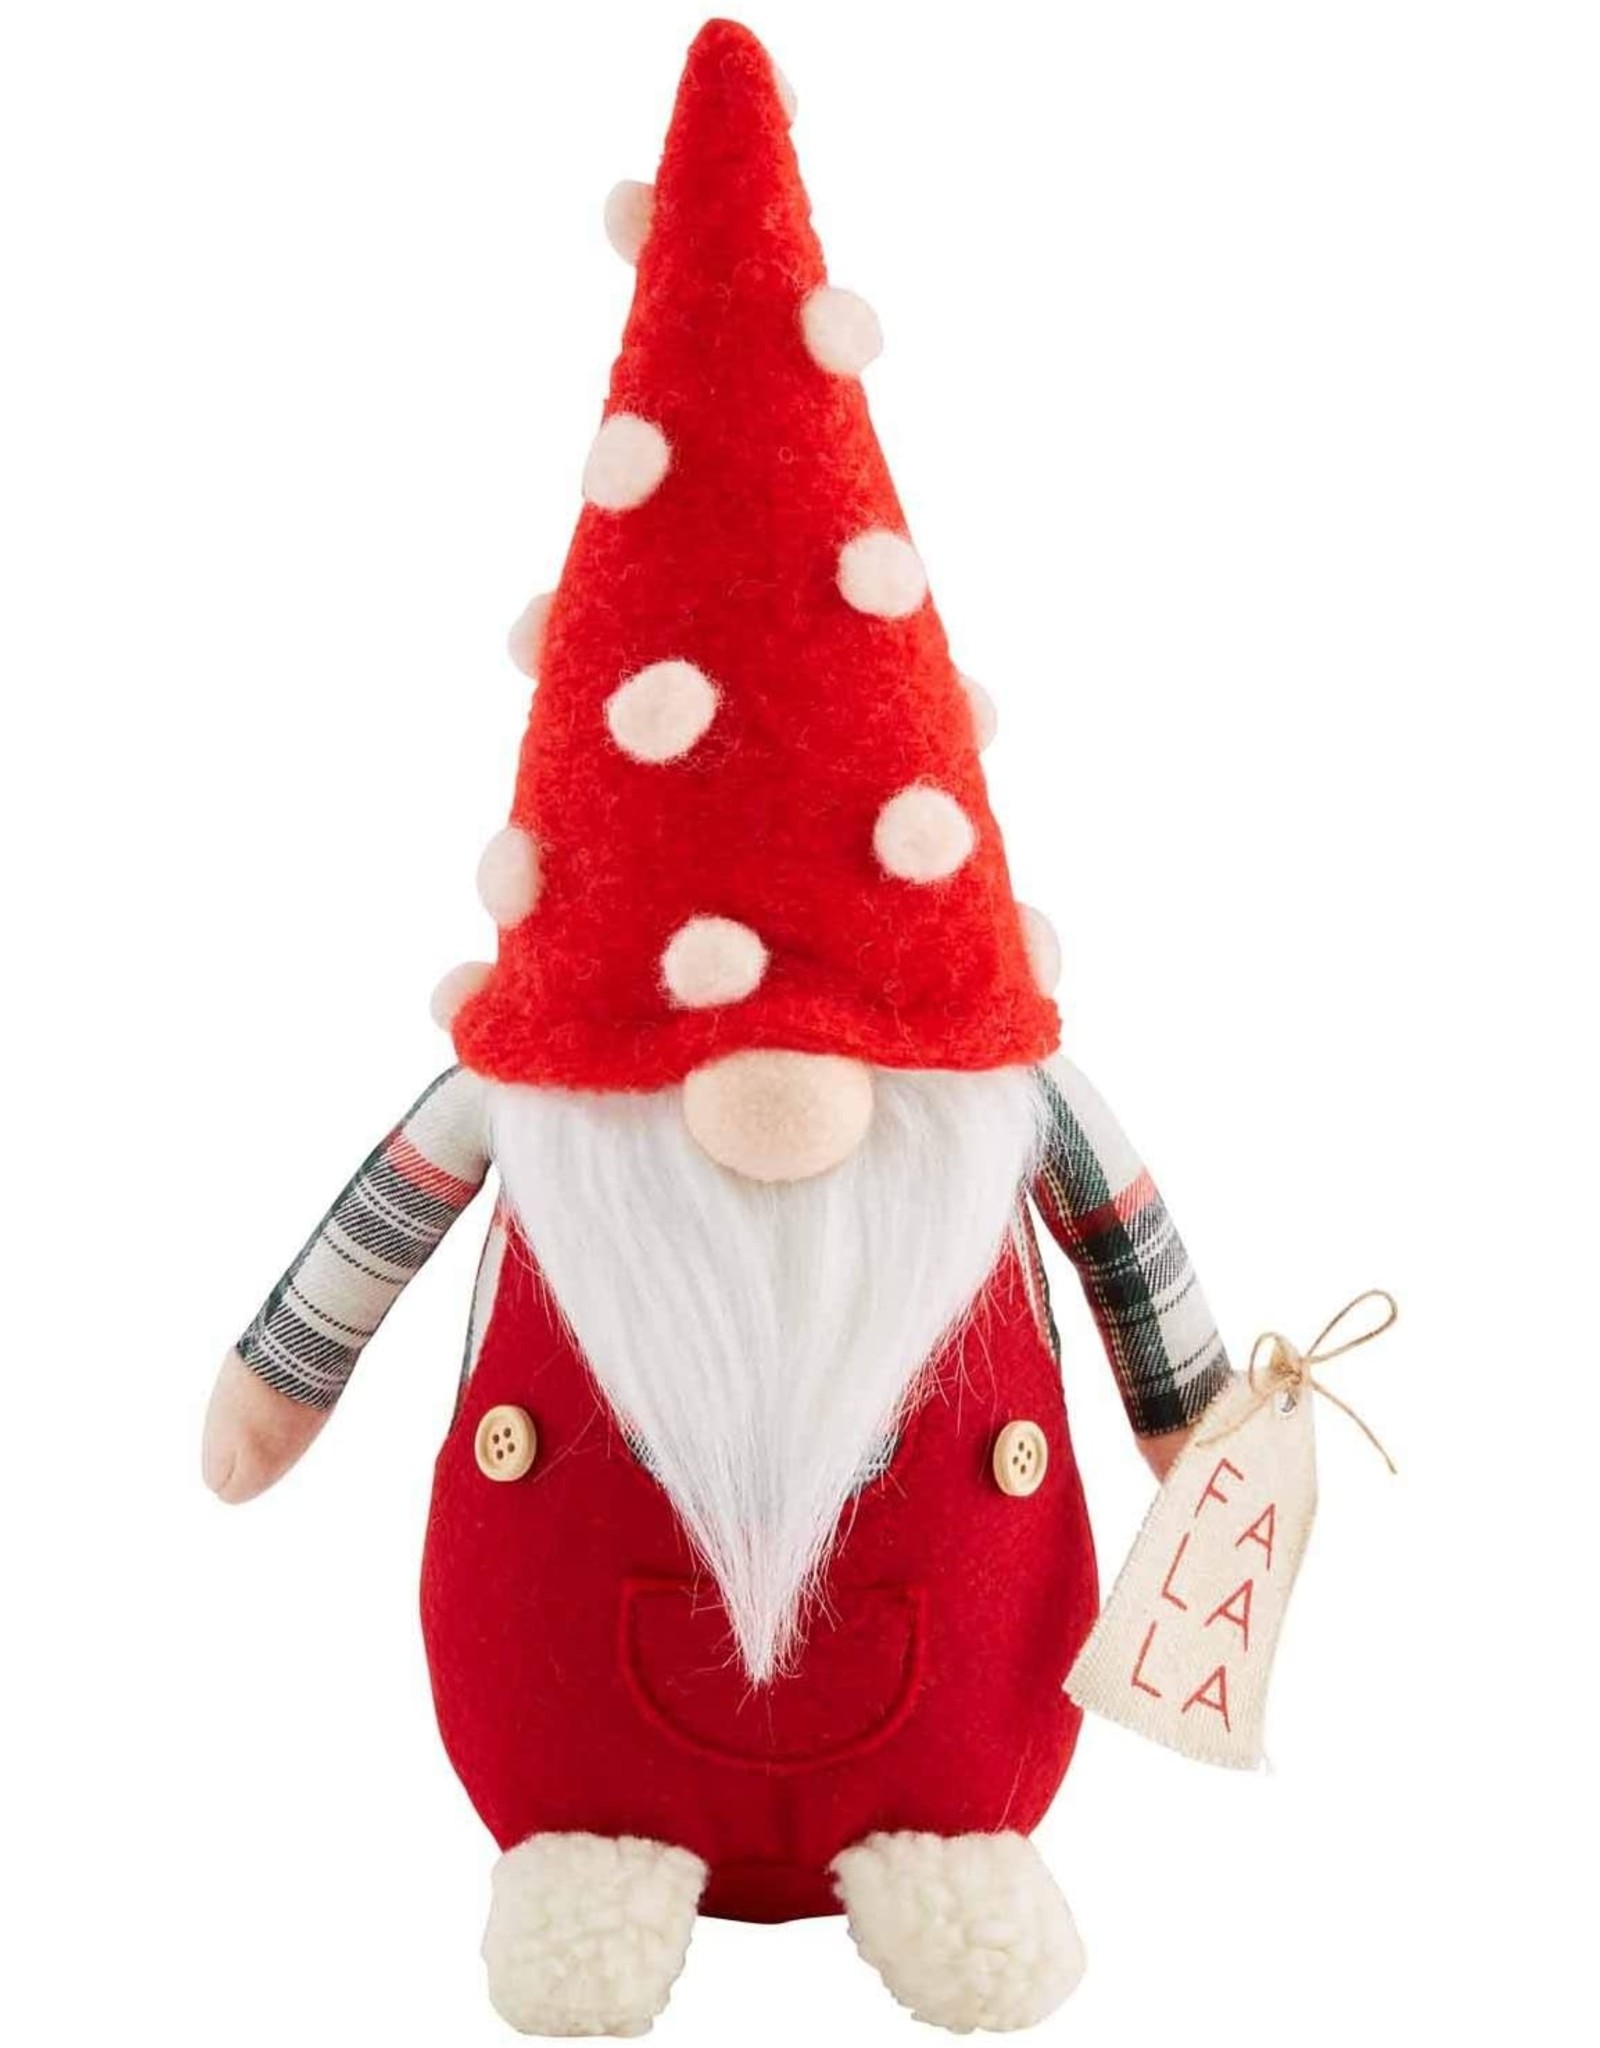 Mud Pie Christmas Gnome Sitter Small With Fa La La 11 Inch